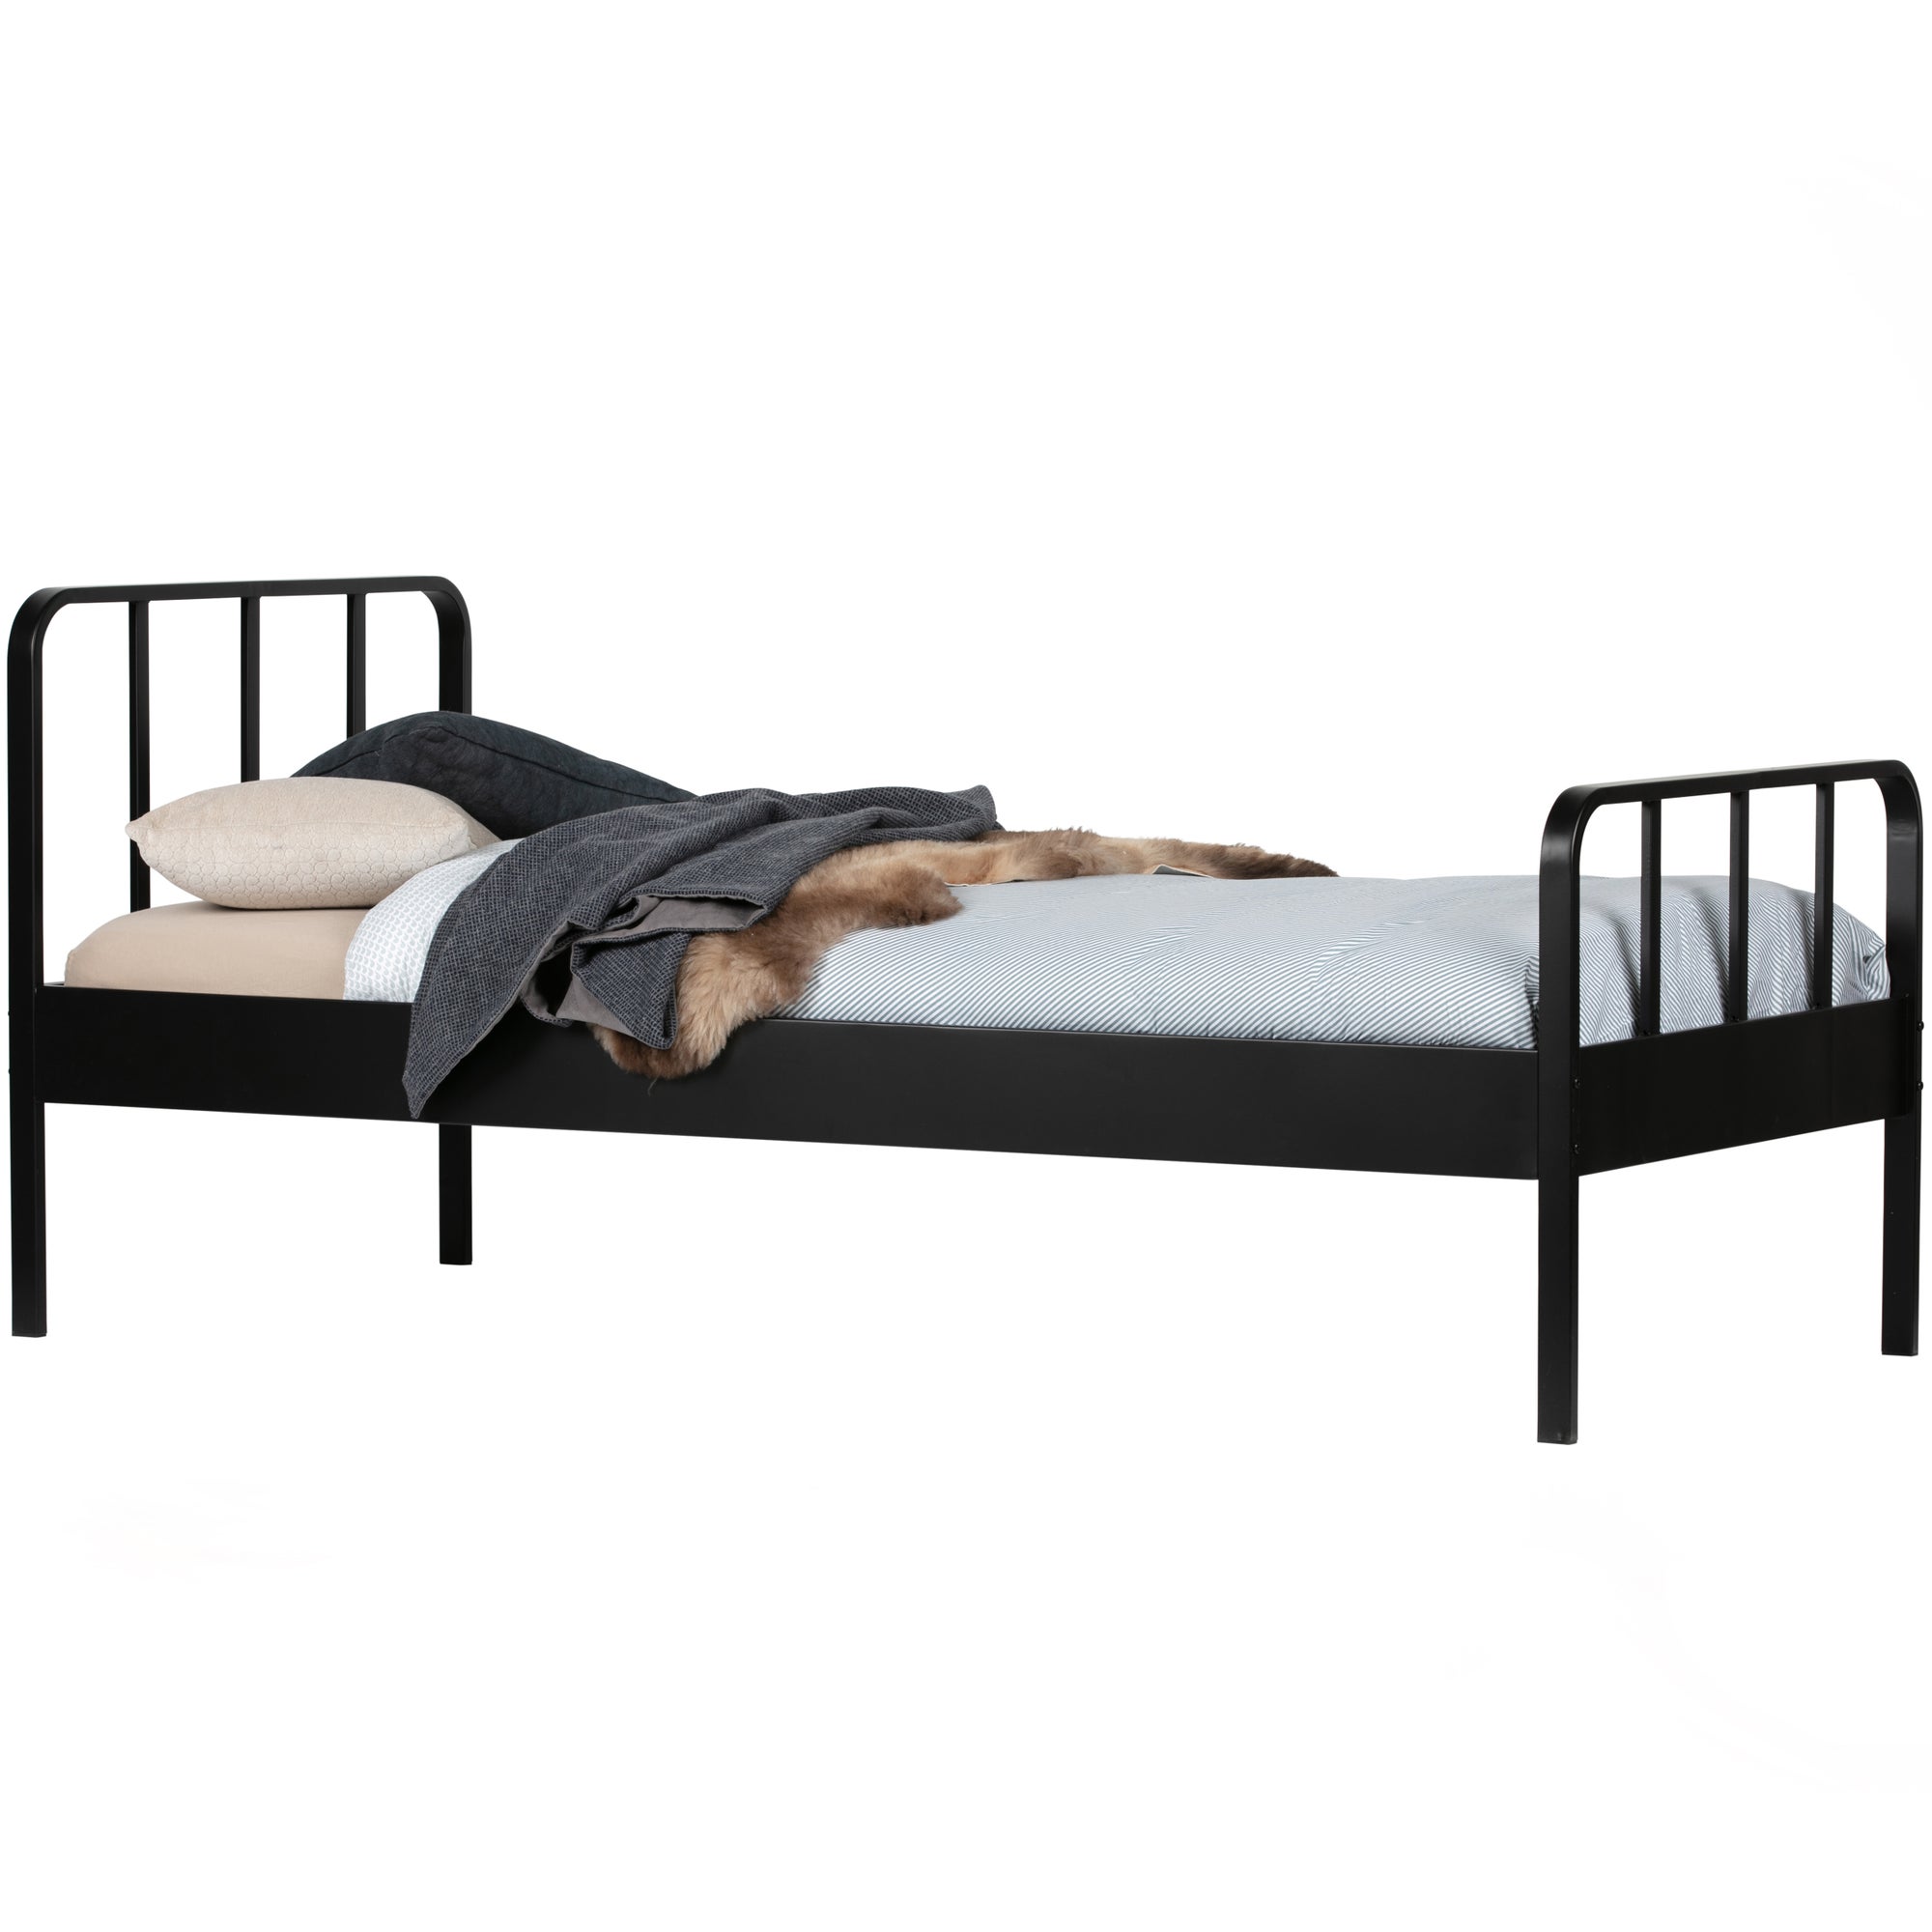 Mees Bed Metaal Zwart 90x200 Cm